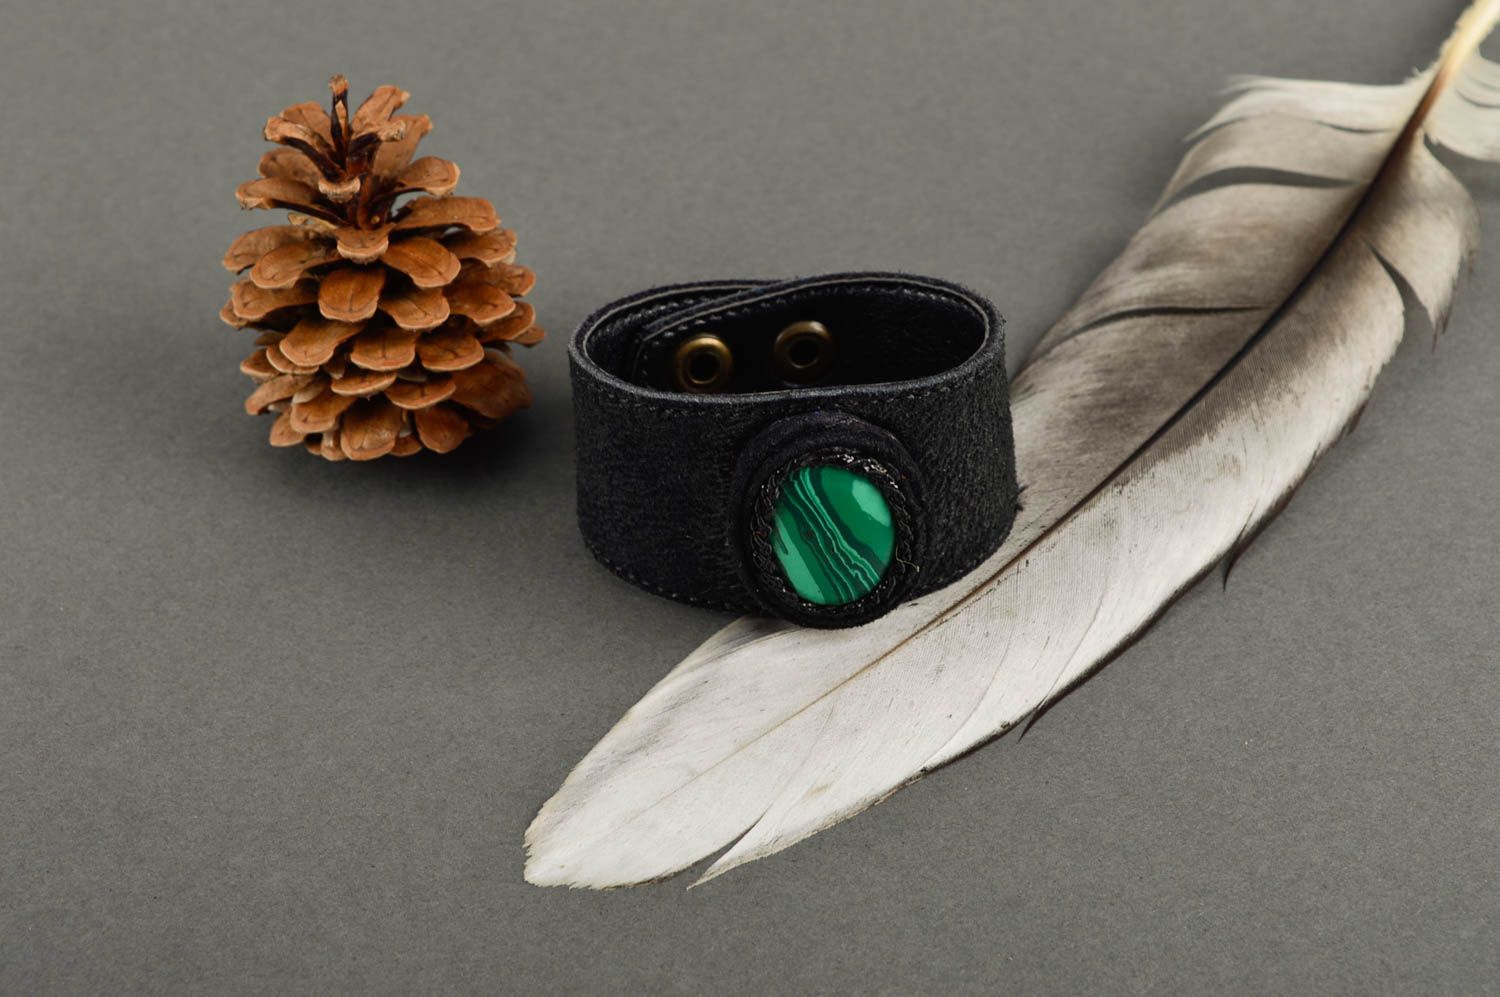 Stylish handmade leather bracelet wrist bracelet designs fashion tips gift ideas photo 1